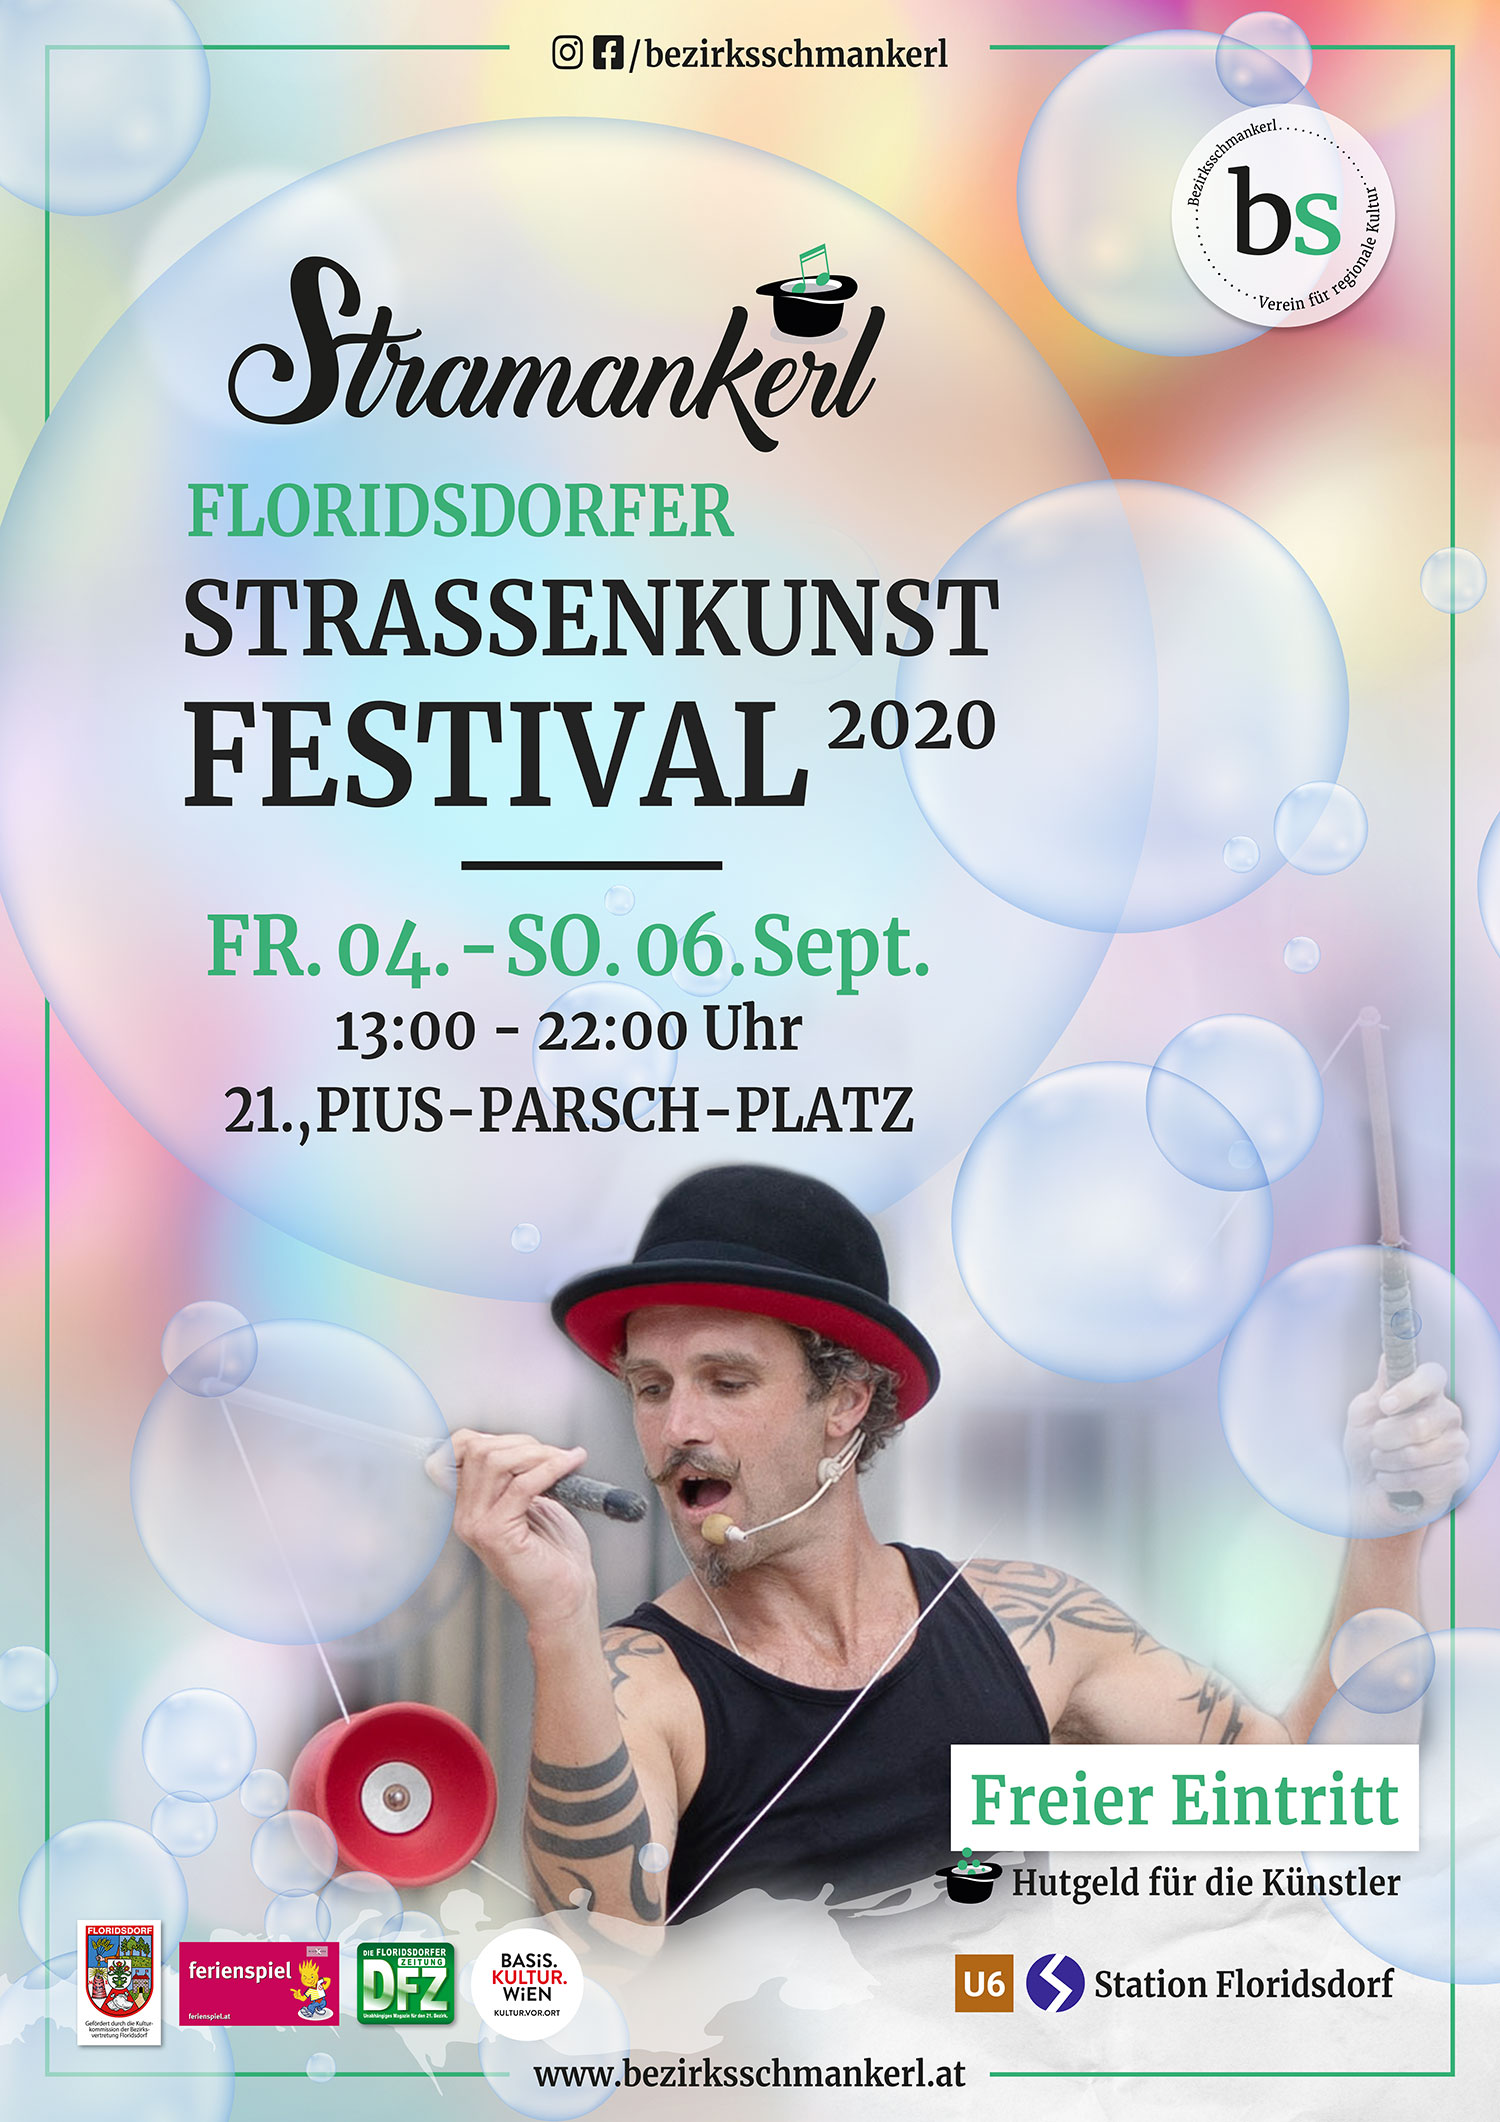 Stramankerl - Floridsdorfer Straßenkunst Festival 2020